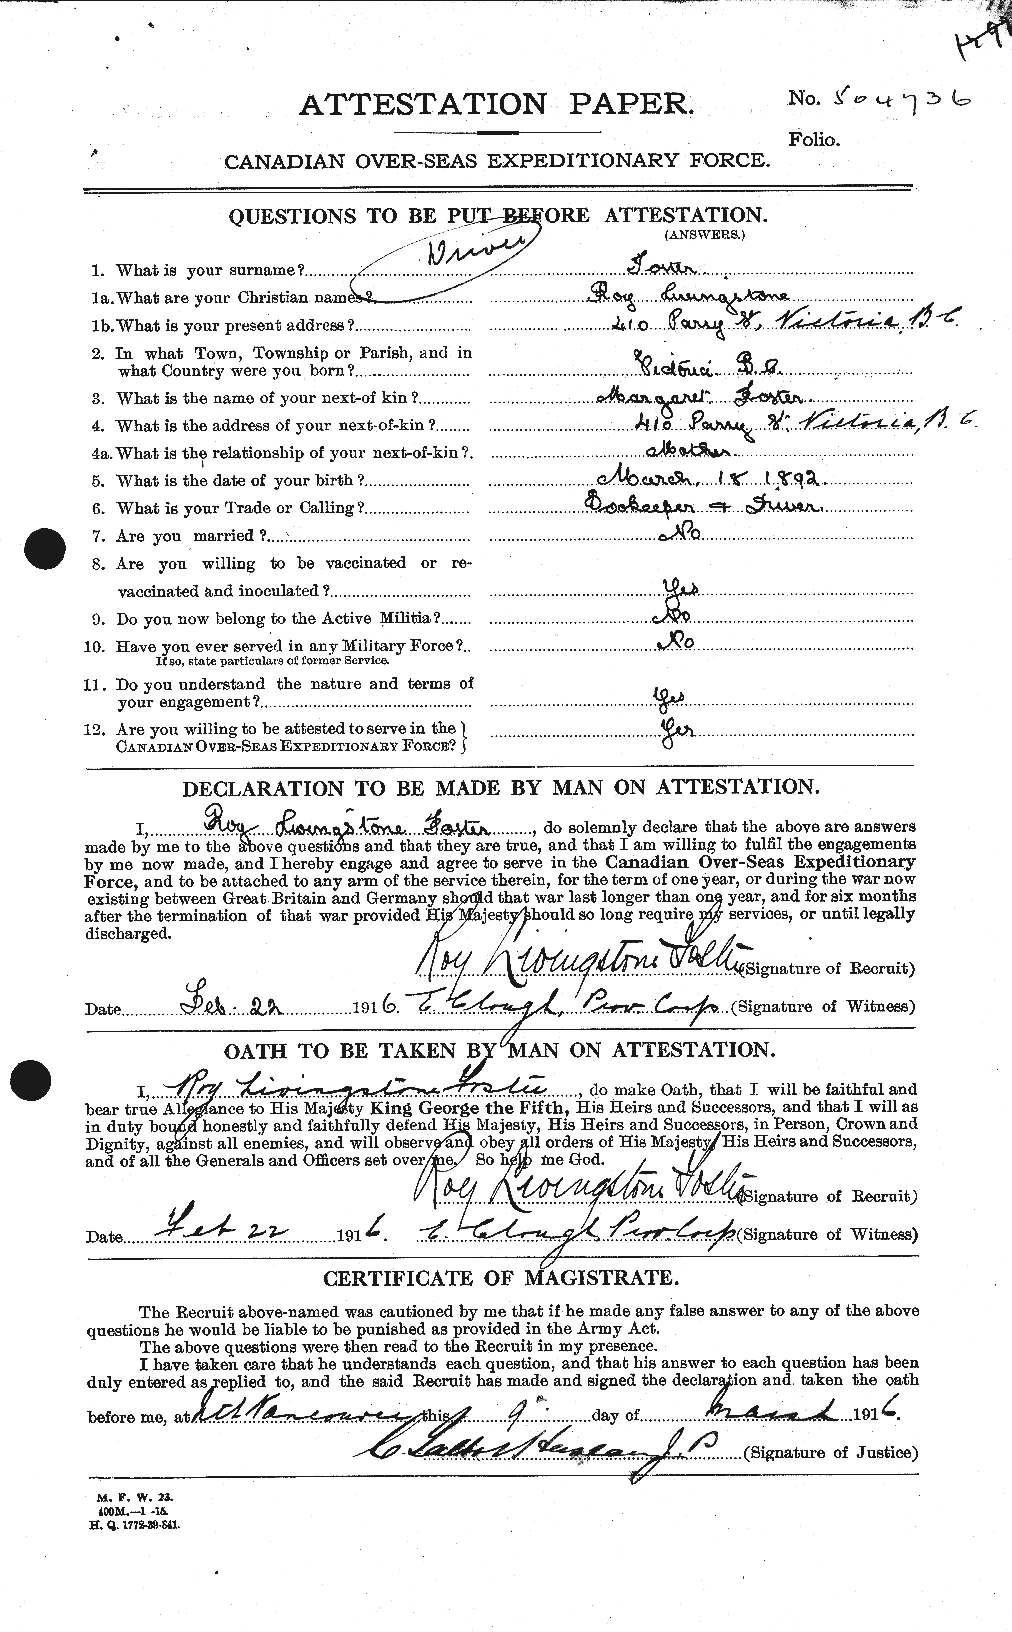 Dossiers du Personnel de la Première Guerre mondiale - CEC 335196a